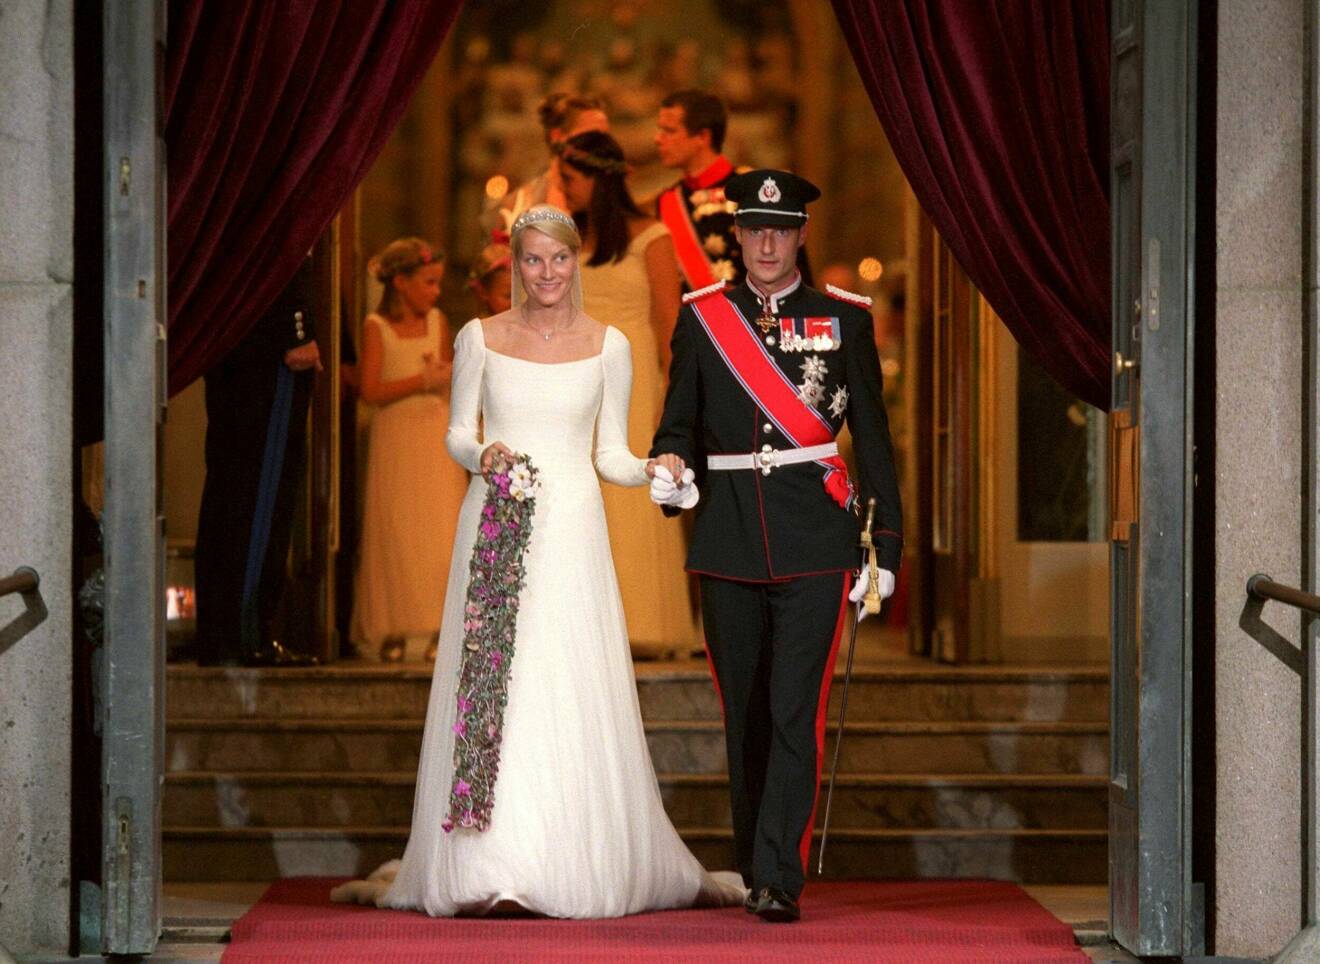 Kungligt bröllop mellan Kronprins Haakon och Mette-Marit Tjessem i Oslo.